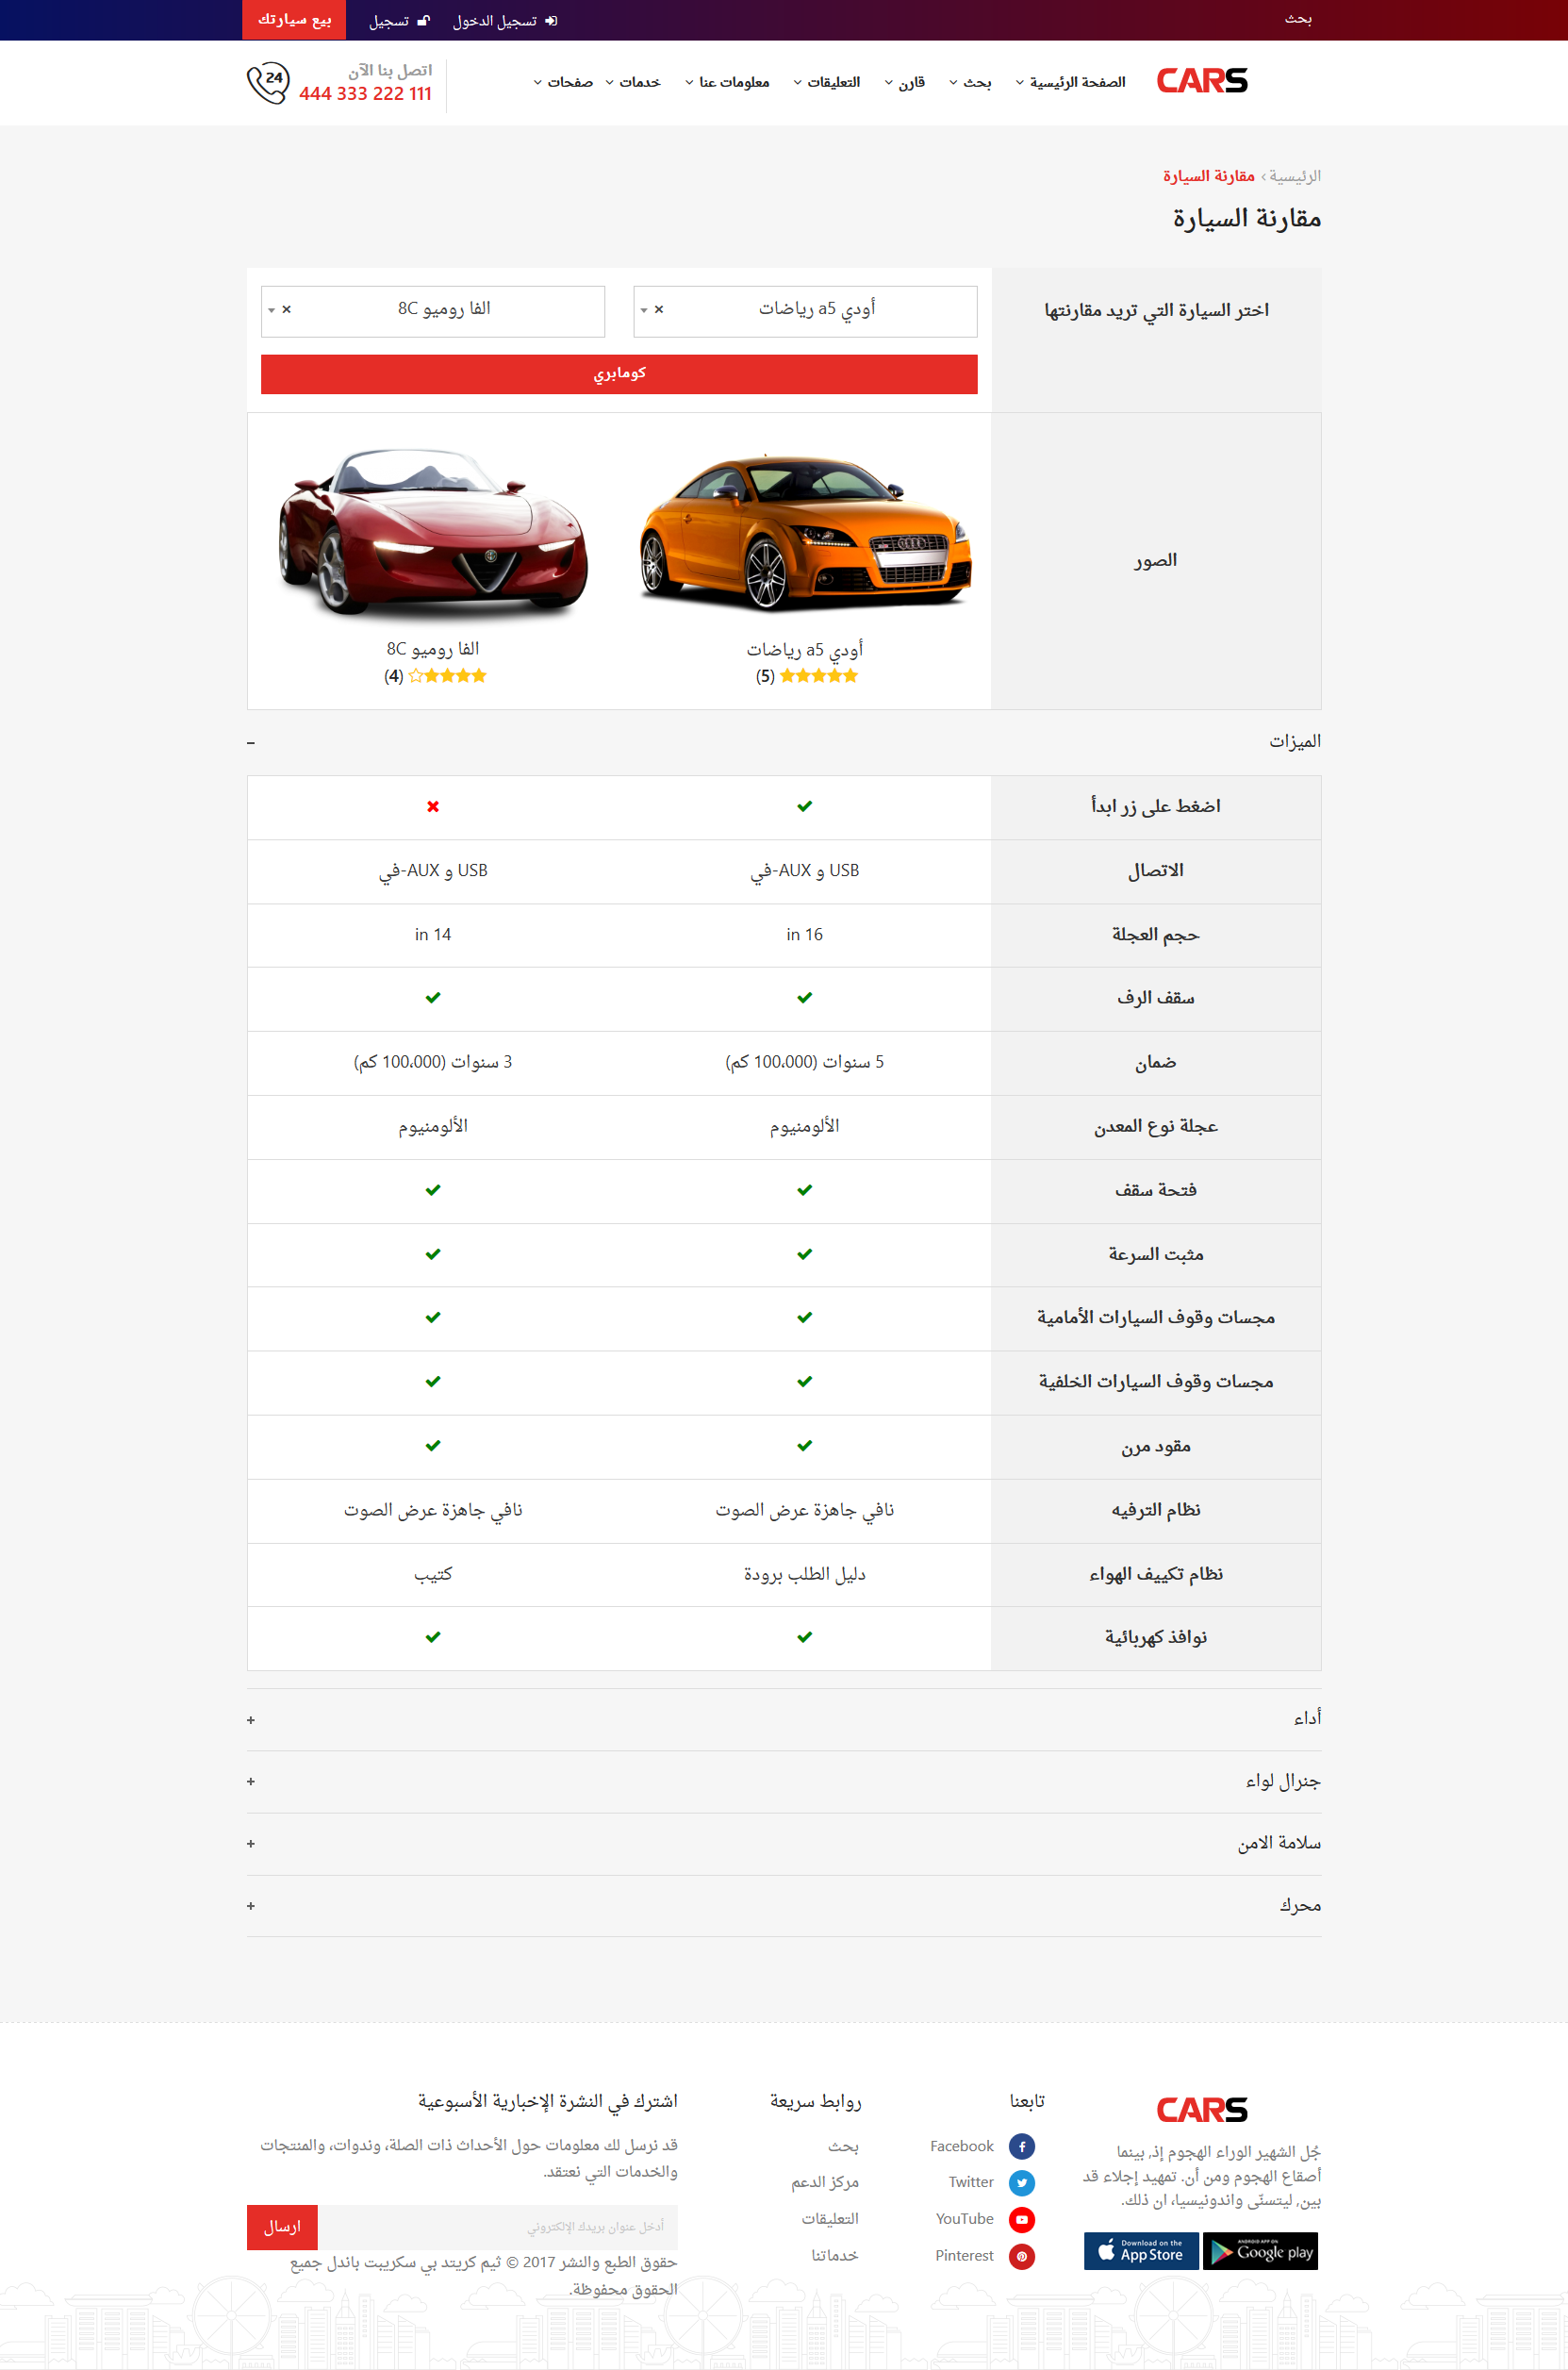 تصميم برنامج موقع حراج معارض سيارات - صفحة مقارنة بين سيارتين بالتفصيل